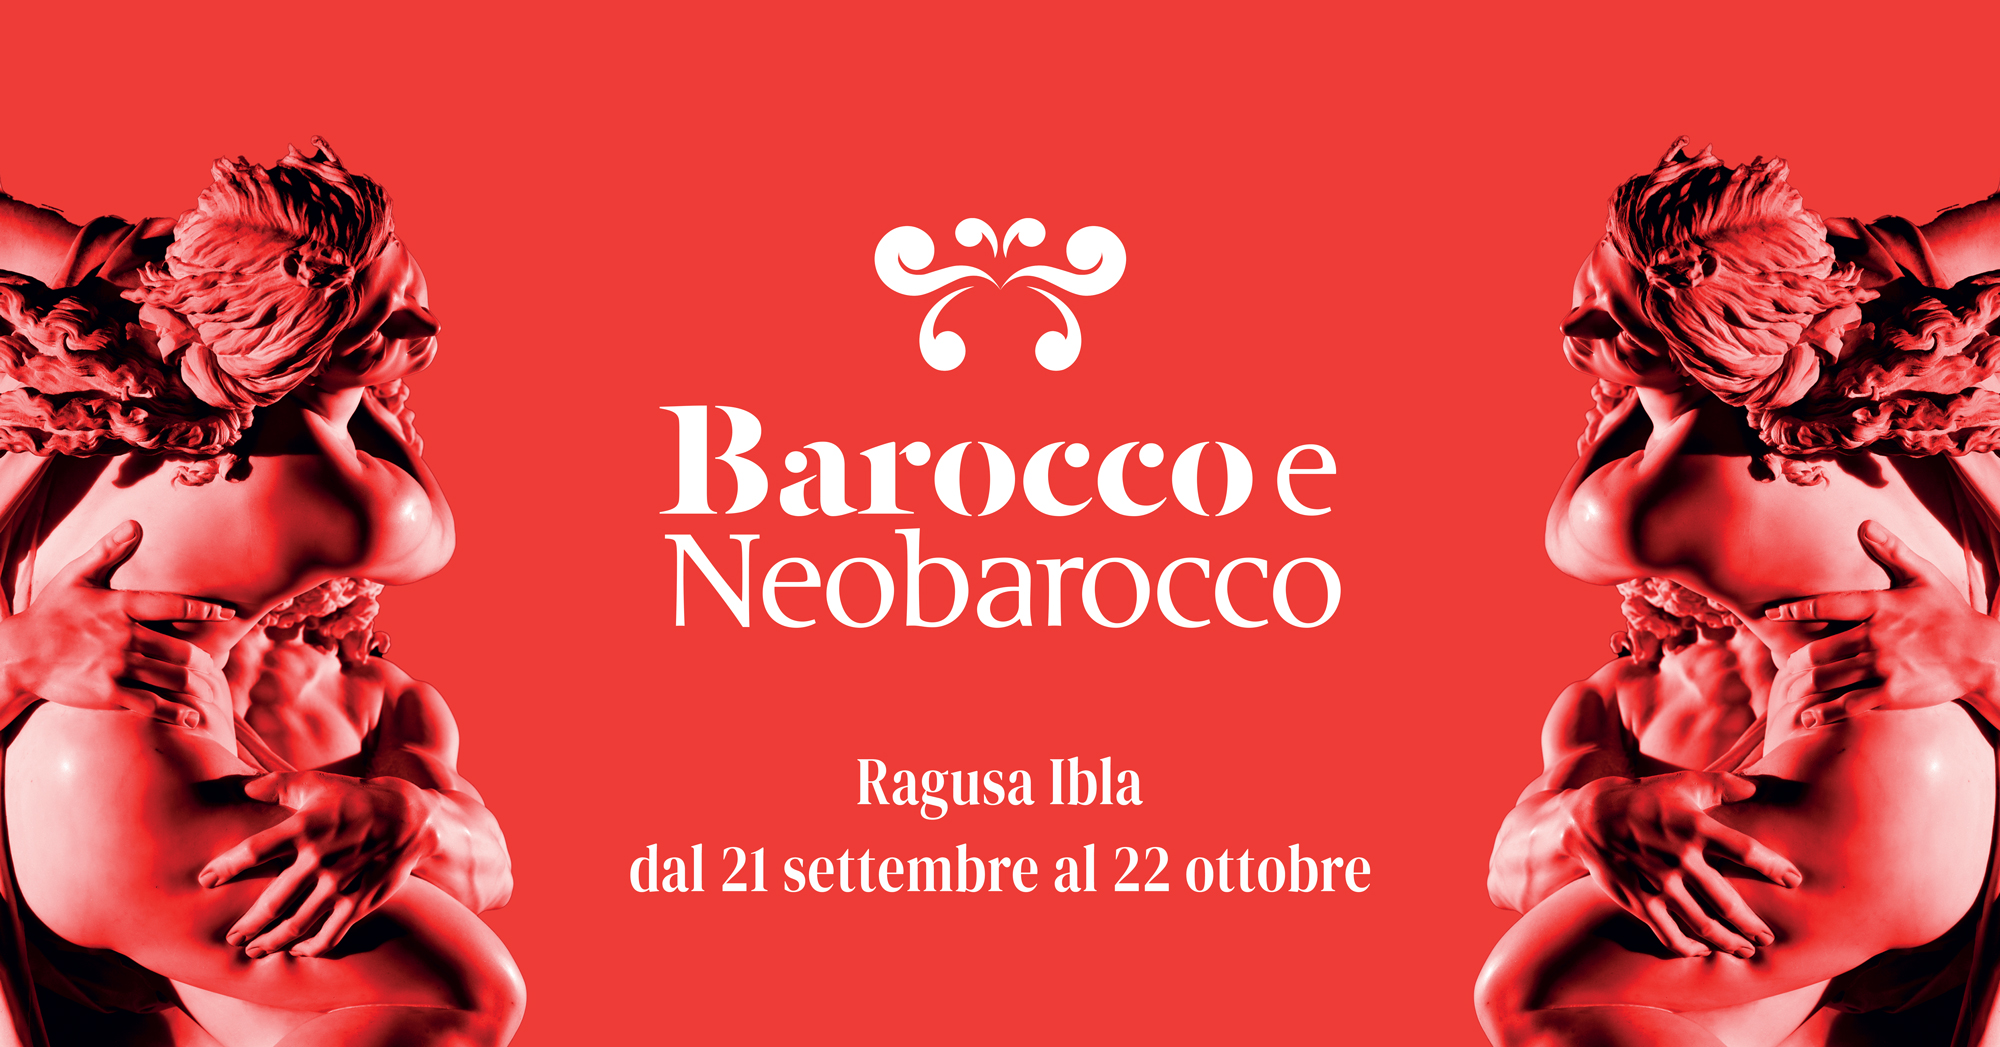 3° Edizione - Barocco & Neobarocco a Ragusa Ibla